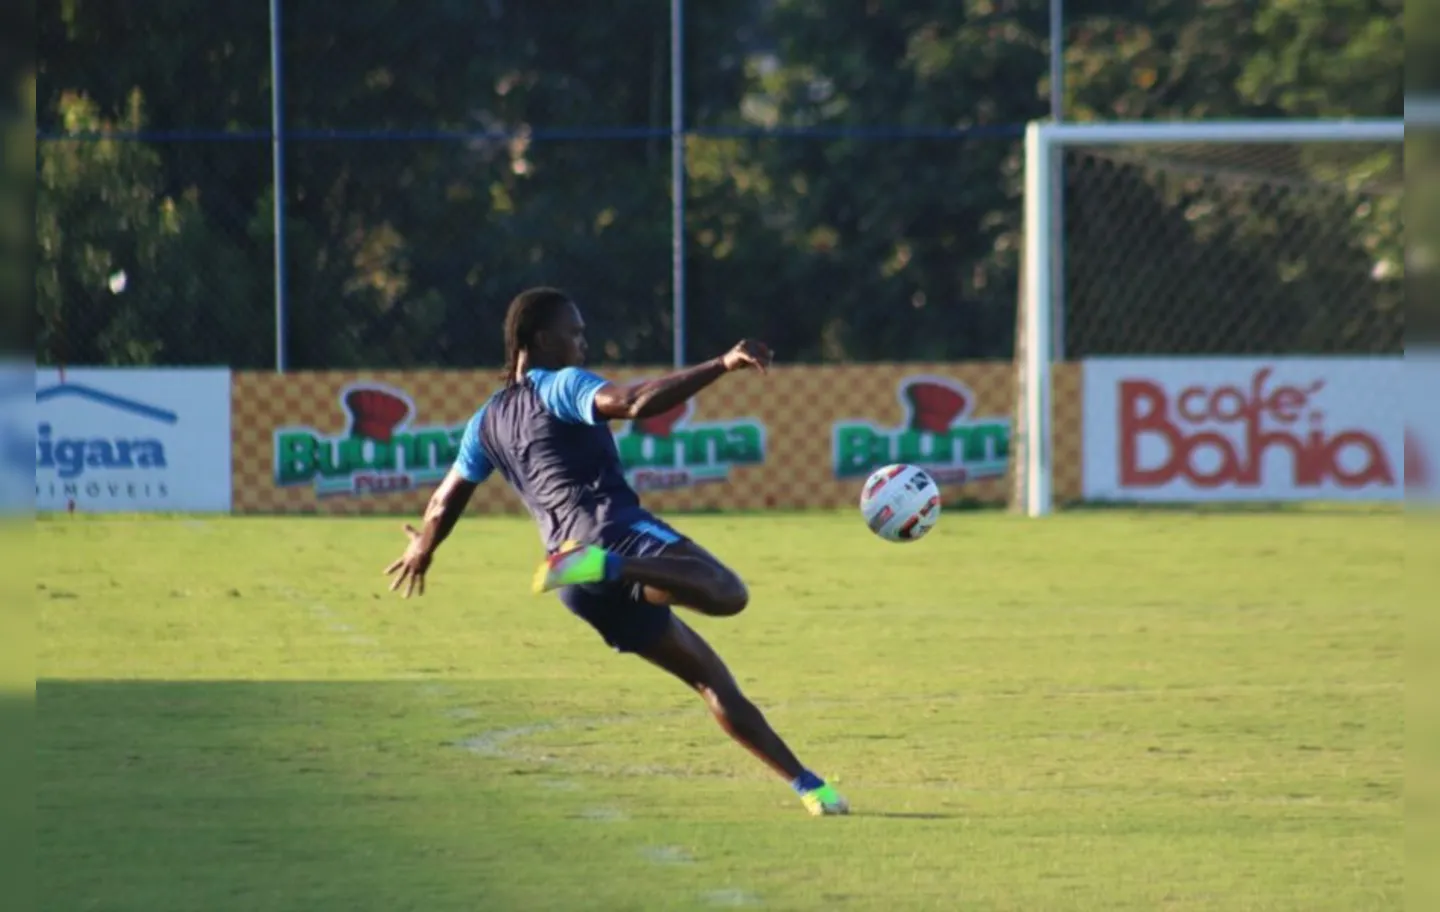 Rodallega ainda busca marcar o primeiro gol desde que retornou de lesão muscular